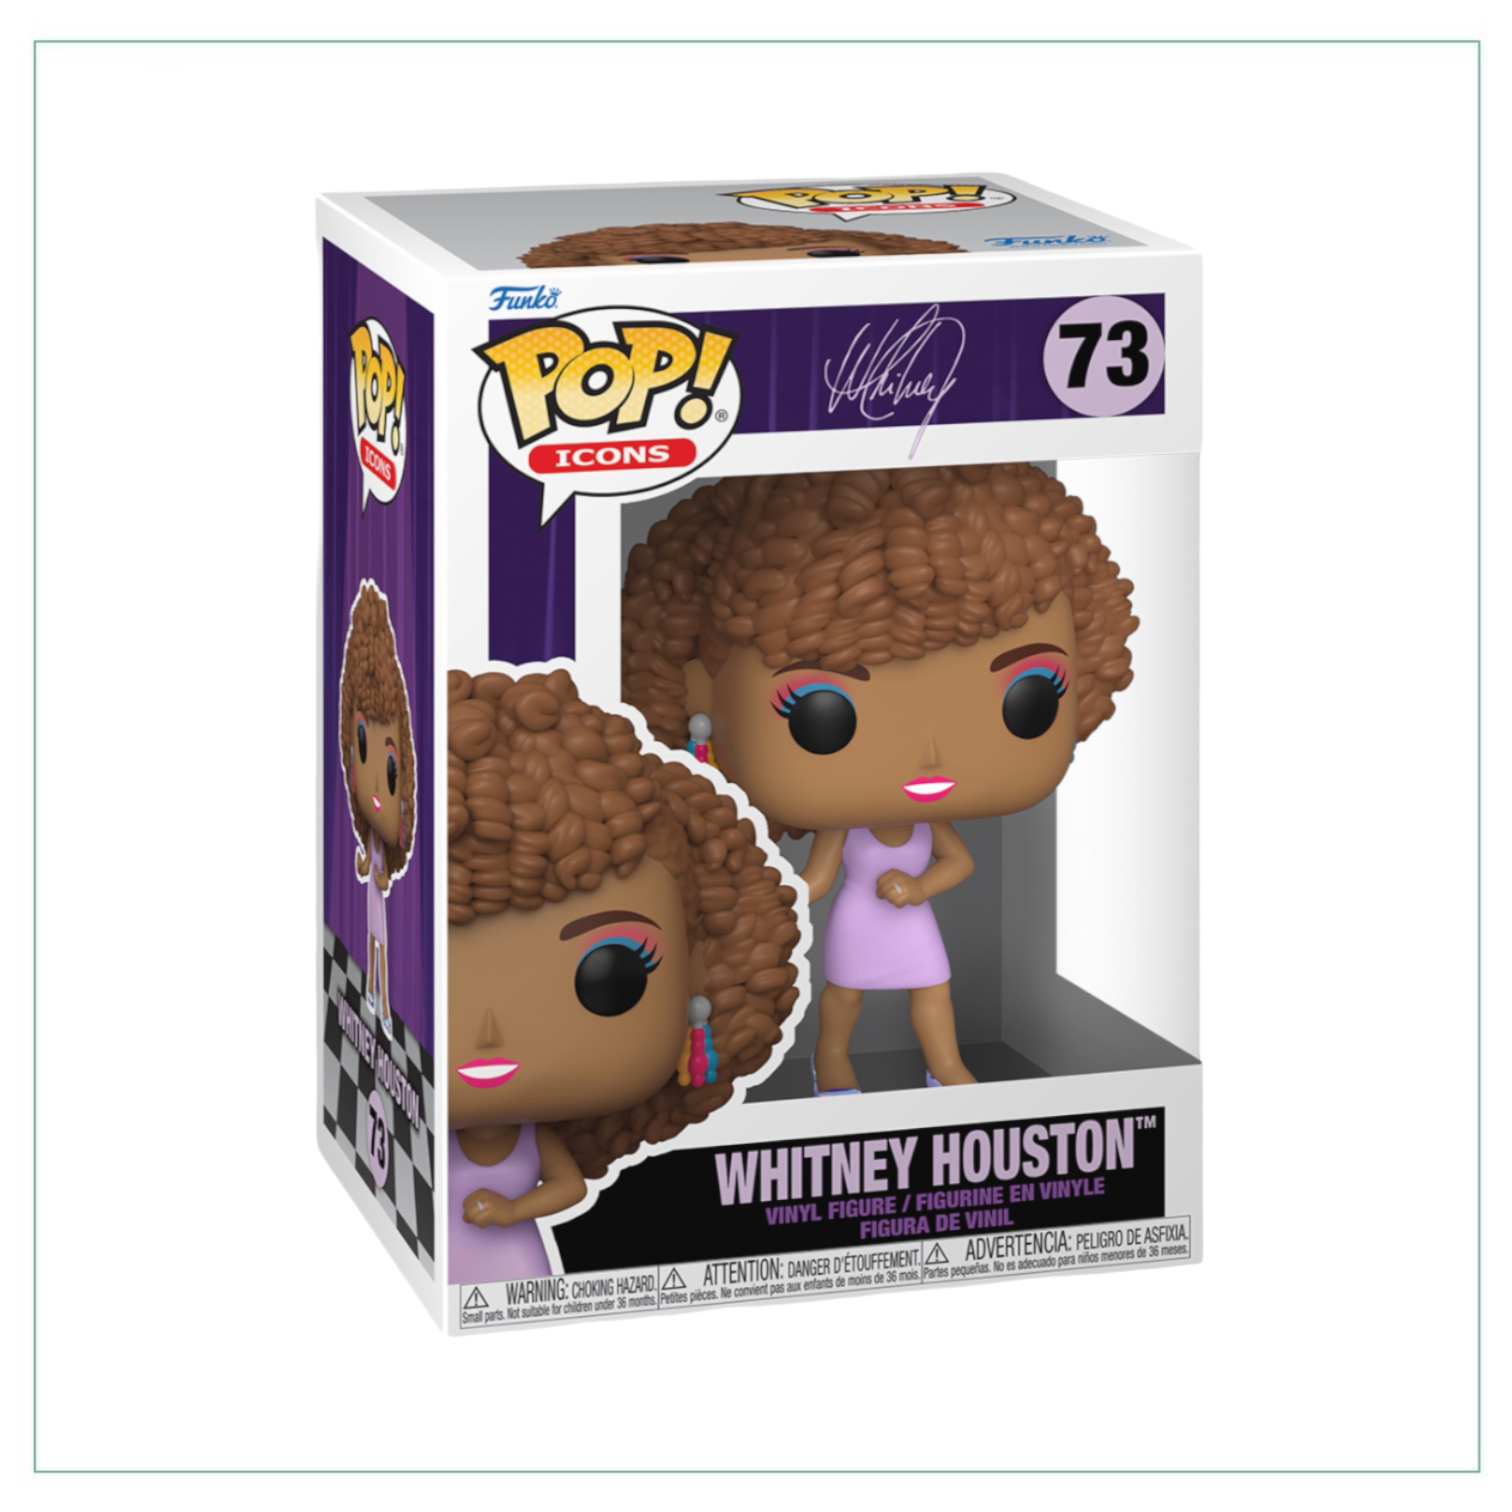 Whitney Houston #73 Funko Pop! - Icons